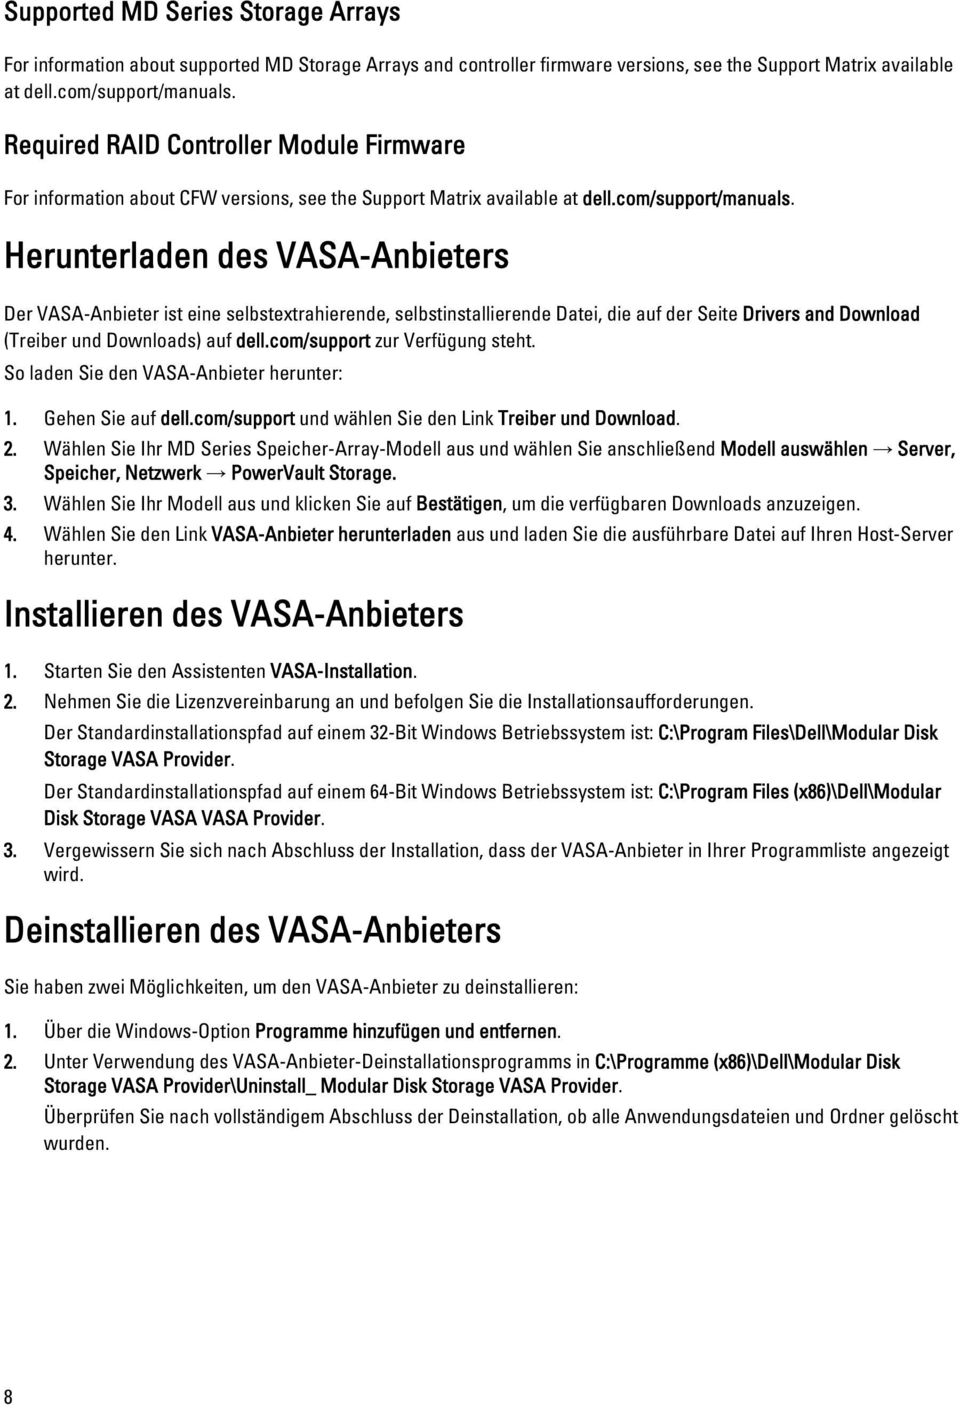 Herunterladen des VASA-Anbieters Der VASA-Anbieter ist eine selbstextrahierende, selbstinstallierende Datei, die auf der Seite Drivers and Download (Treiber und Downloads) auf dell.